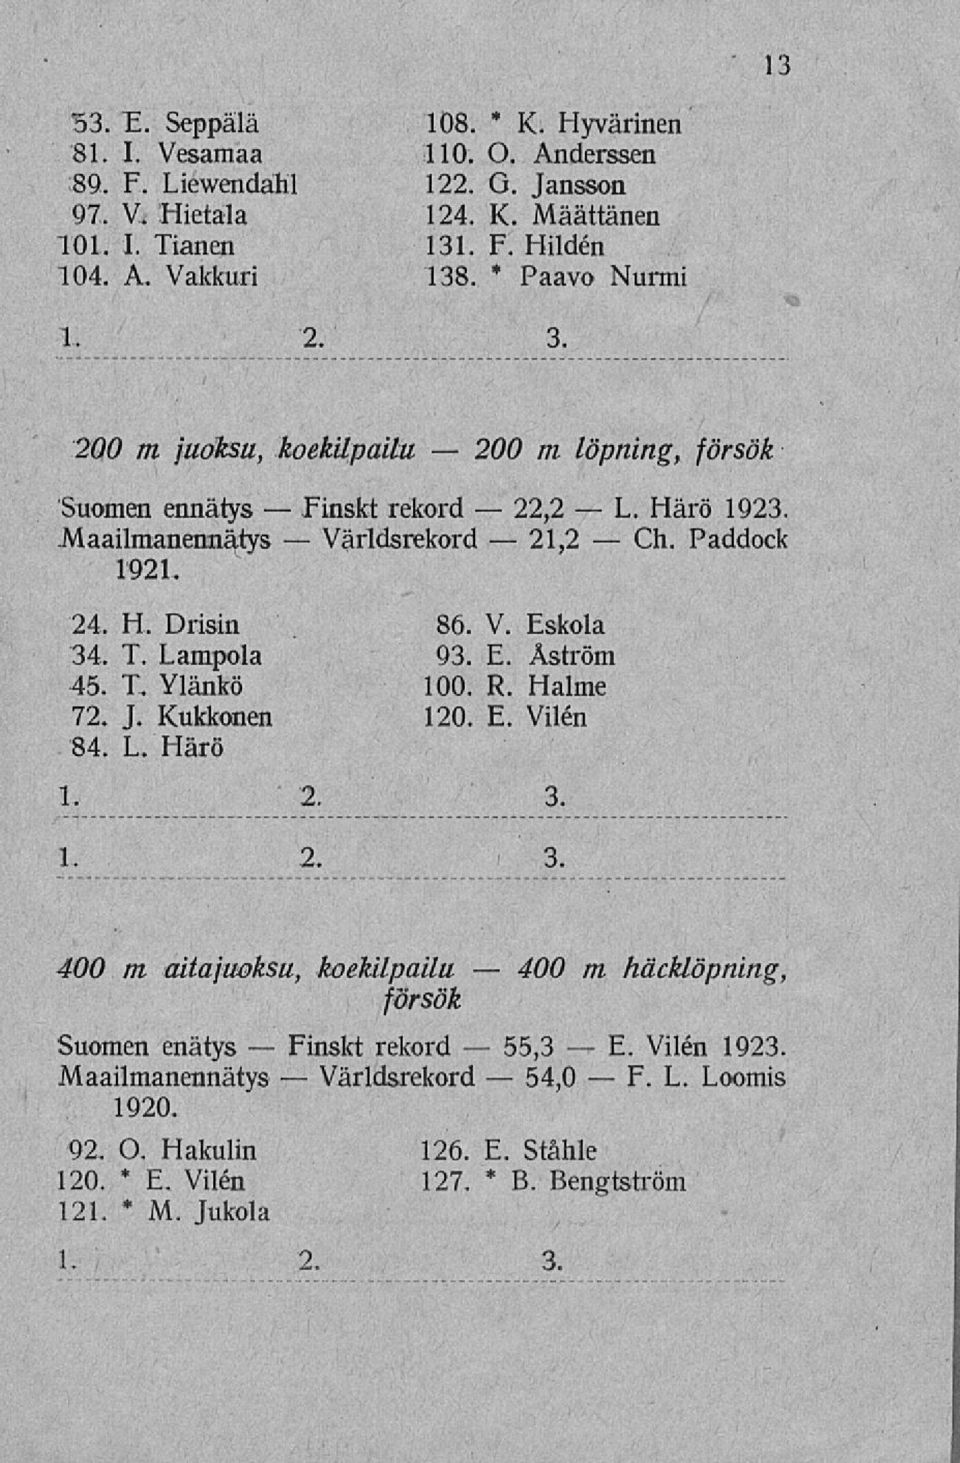 H. Drisin 34. T. Lampola 45. T. Ylänkö 72. J. Kukkonen 84. L. Härö rekord 86. V. Eskola 93. E. Åström 100. R. Halme 120. E. Vilén 1. 2. 3. 1. 2. 3. Härö 1923.